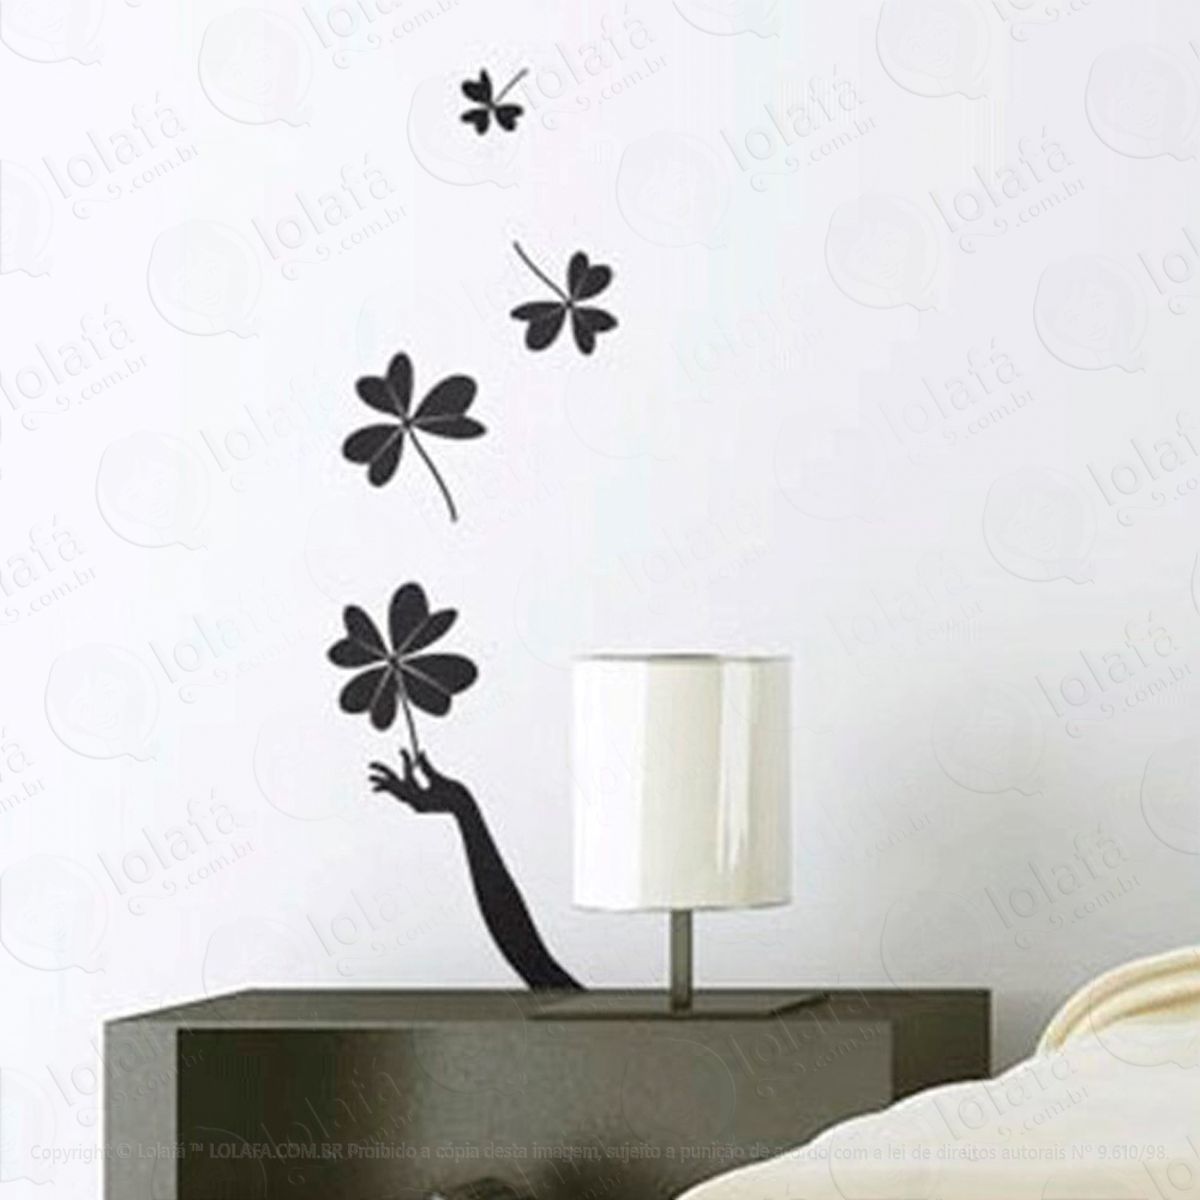 trevos da sorte adesivo de parede decorativo para casa, sala, quarto e vidro - mod:74